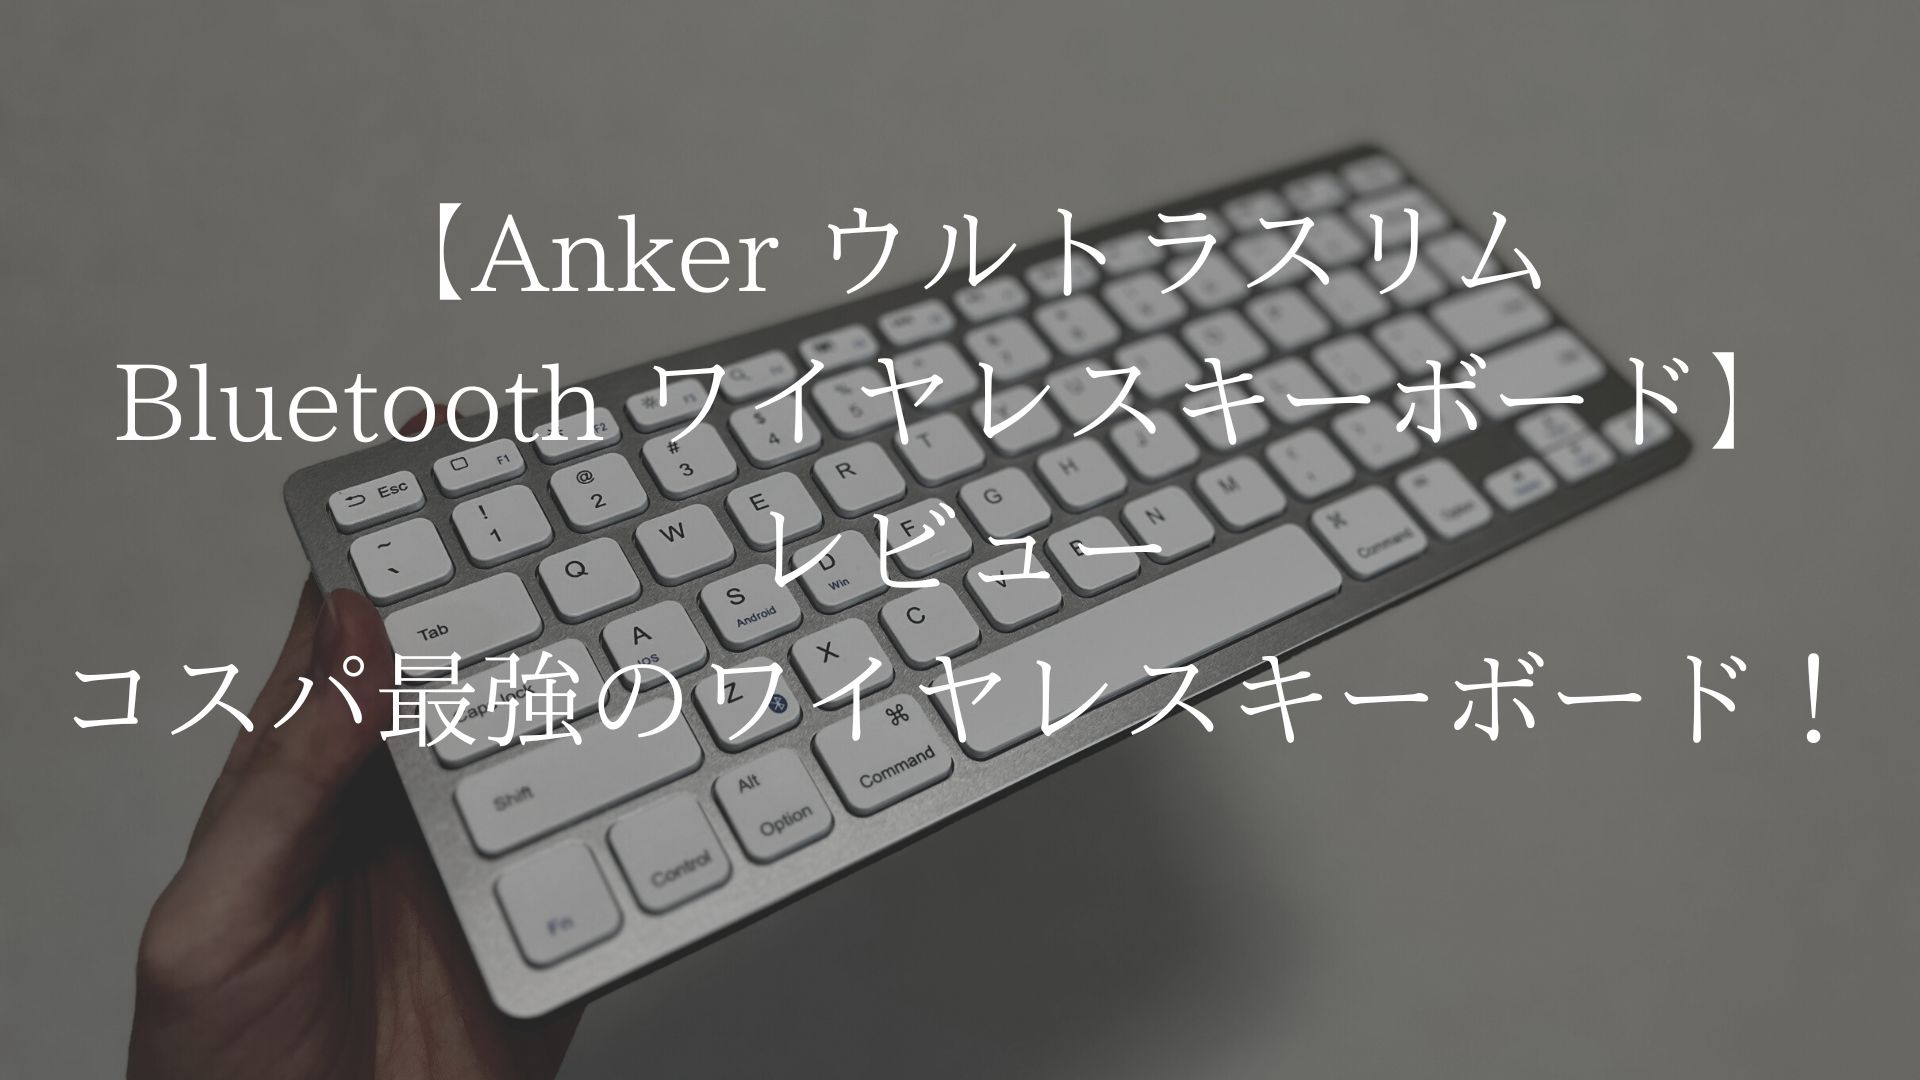 Anker ウルトラスリム Bluetooth ワイヤレスキーボードのアイキャッチ画像